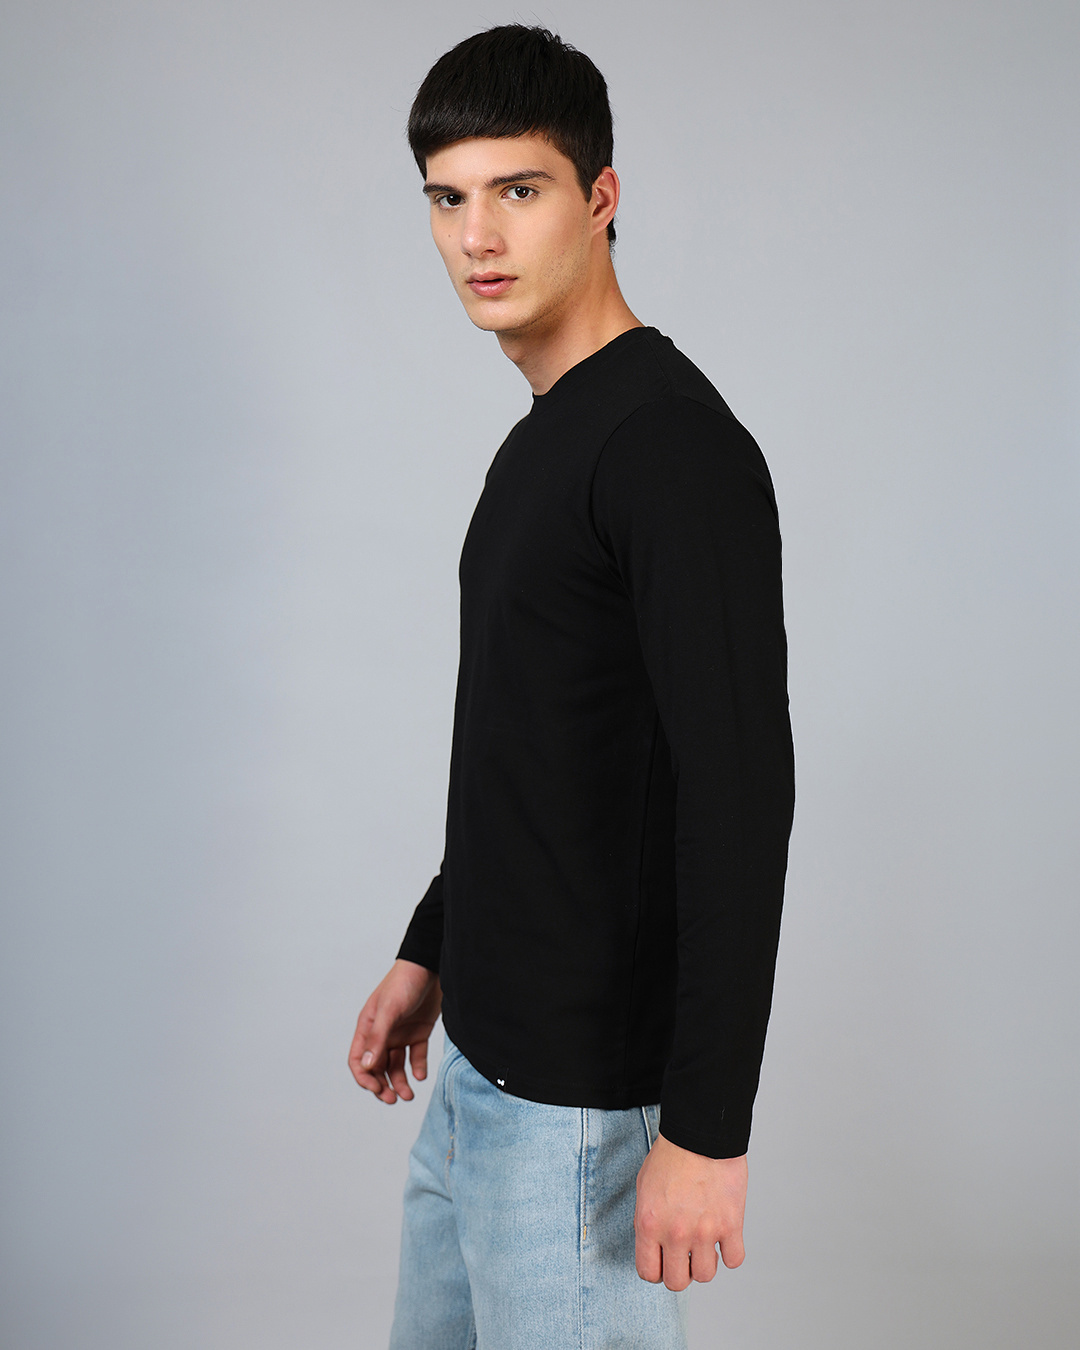 Buy Plain Black Solid Regular Fit Men's T-shirt Online at Bewakoof